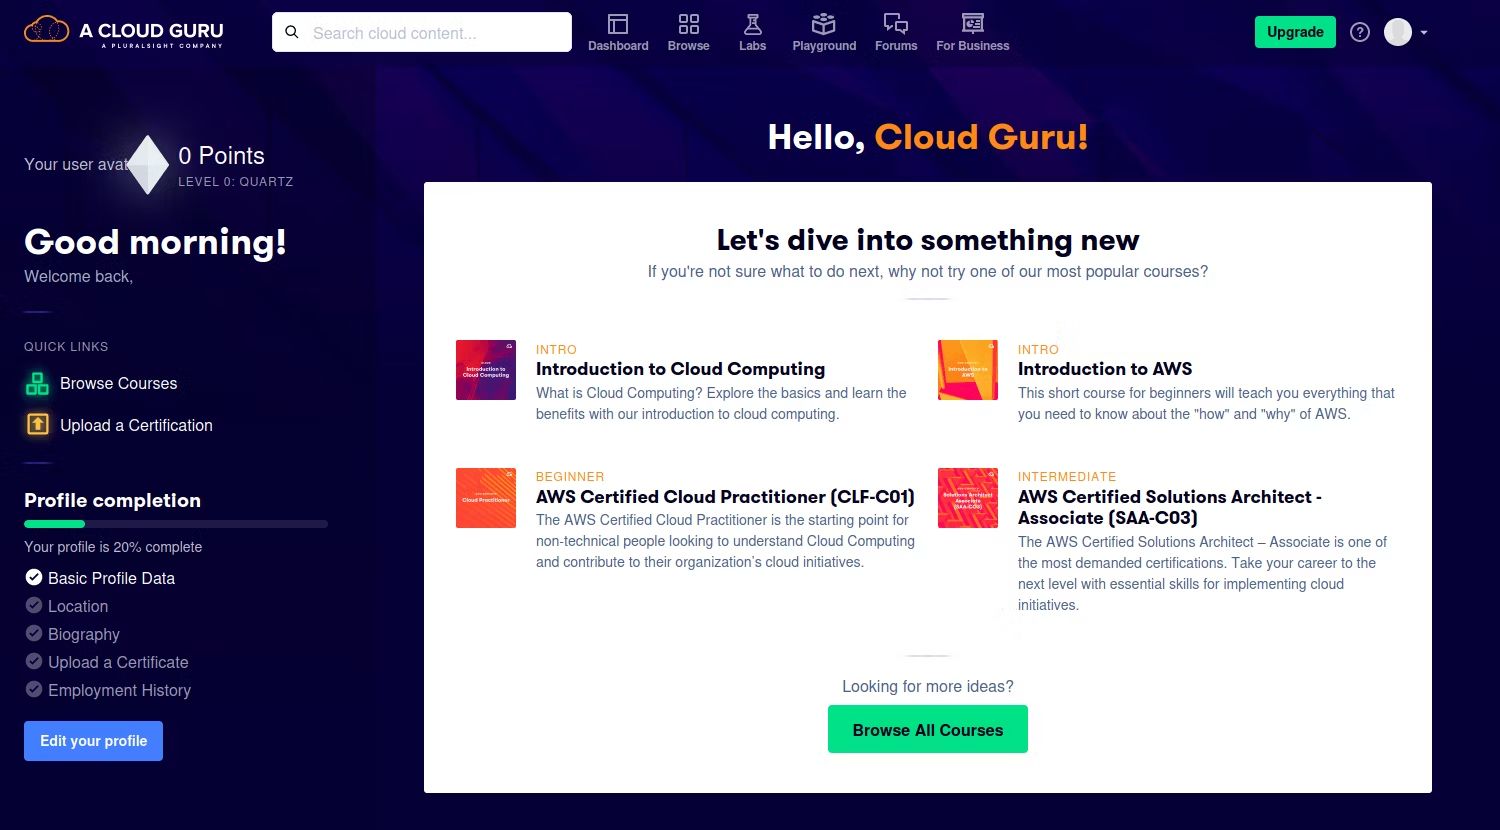 viewing the homepage of a cloud guru platform